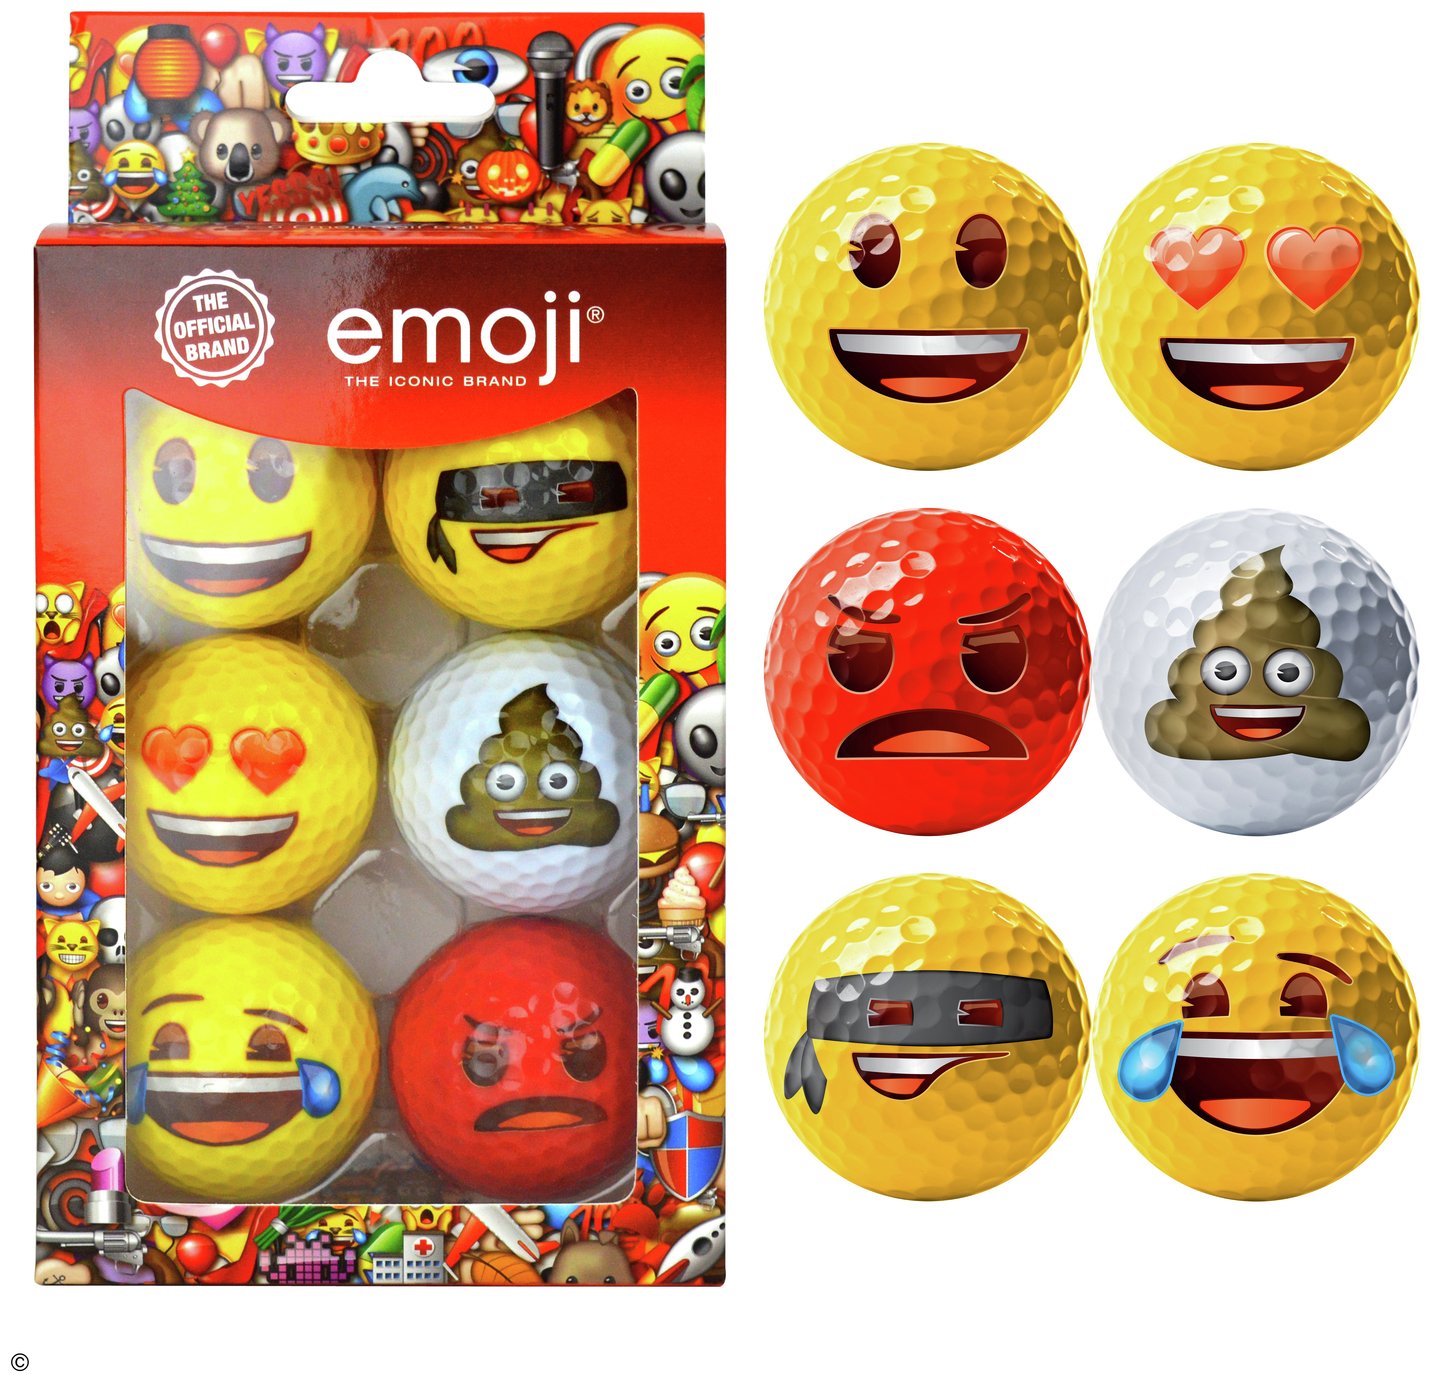 Emoji Official Novelty Fun Golf Balls - Pack of 6